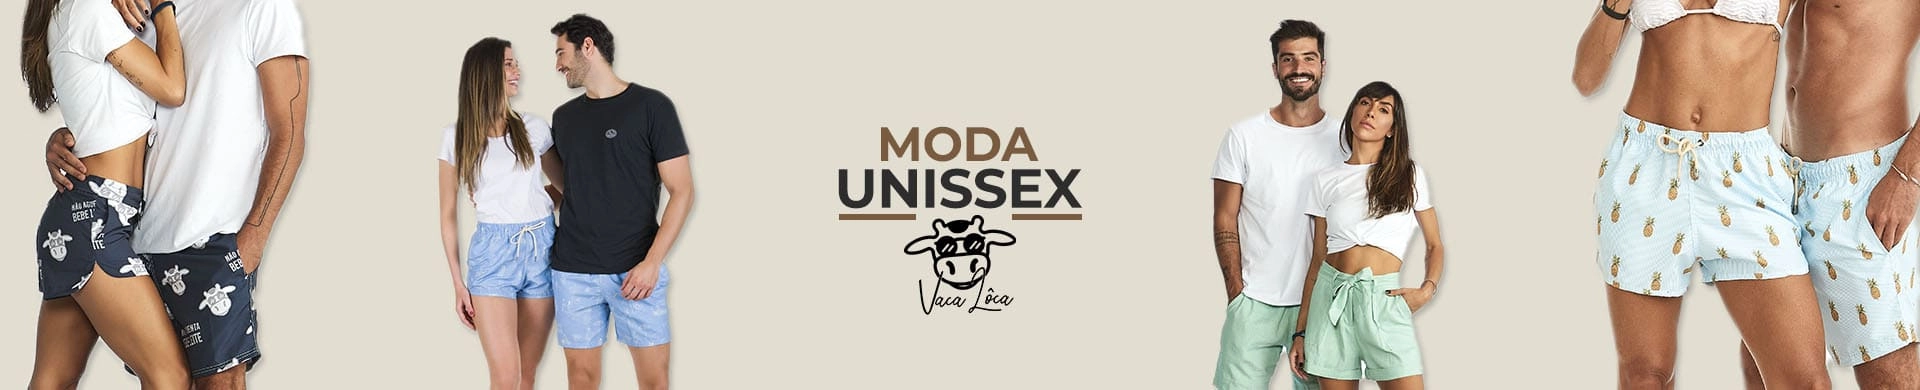 Vaca Lôca Unissex